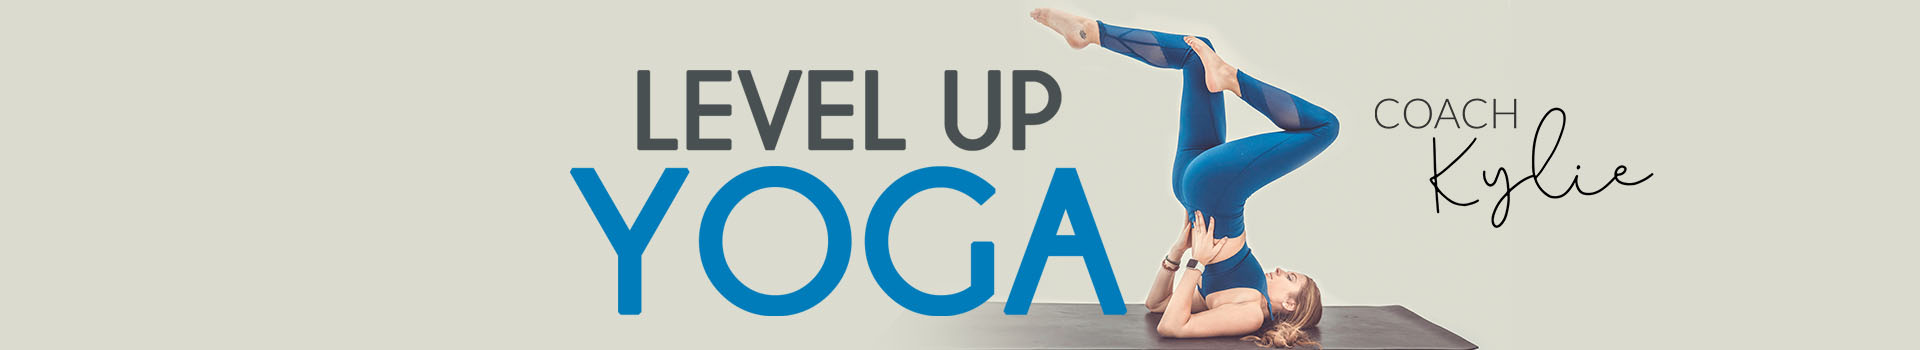 Level Up Yoga